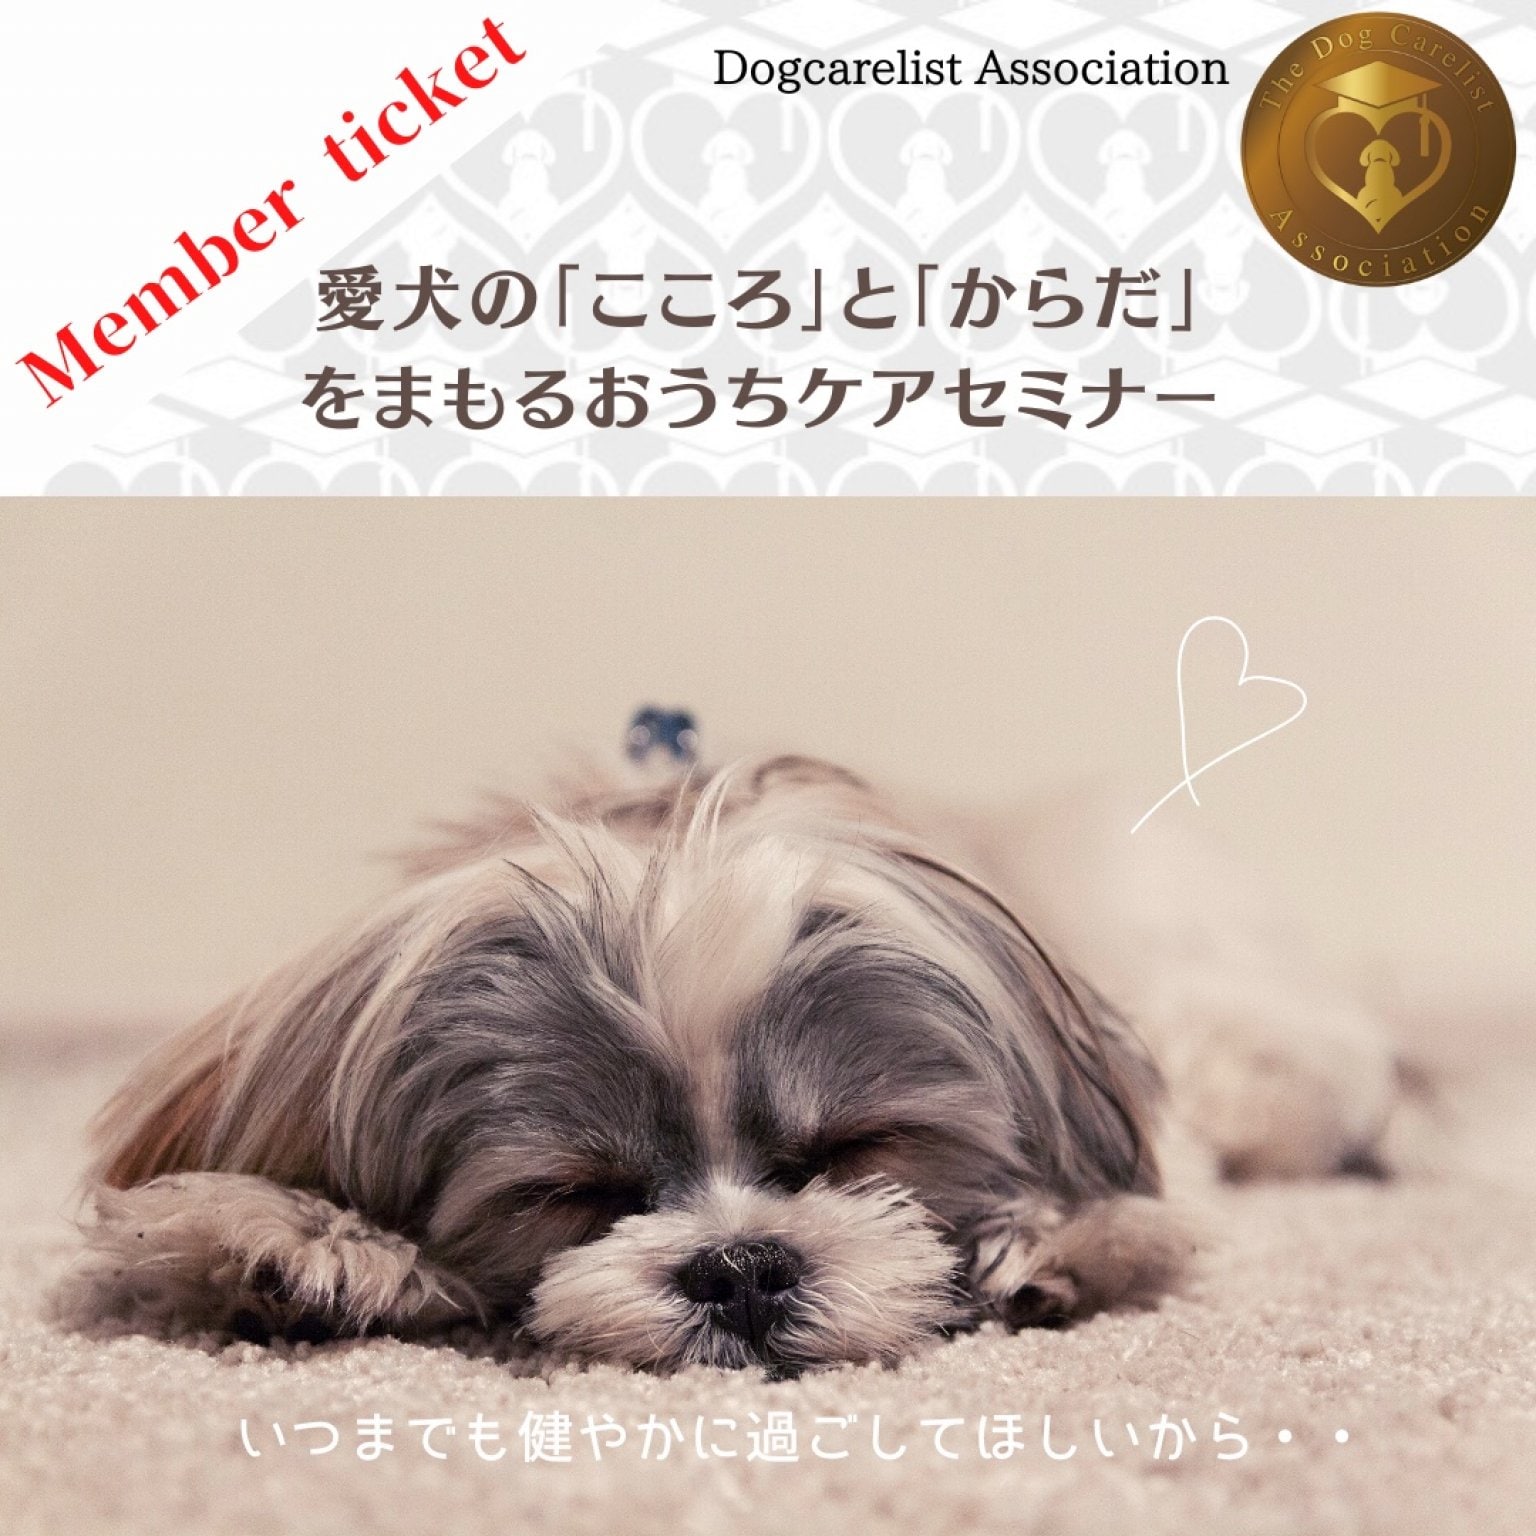 [メンバーチケット]3/19(日) ZOOM開催『愛犬の【こころ】と【からだ】の健康をまもるおうちケアセミナー』